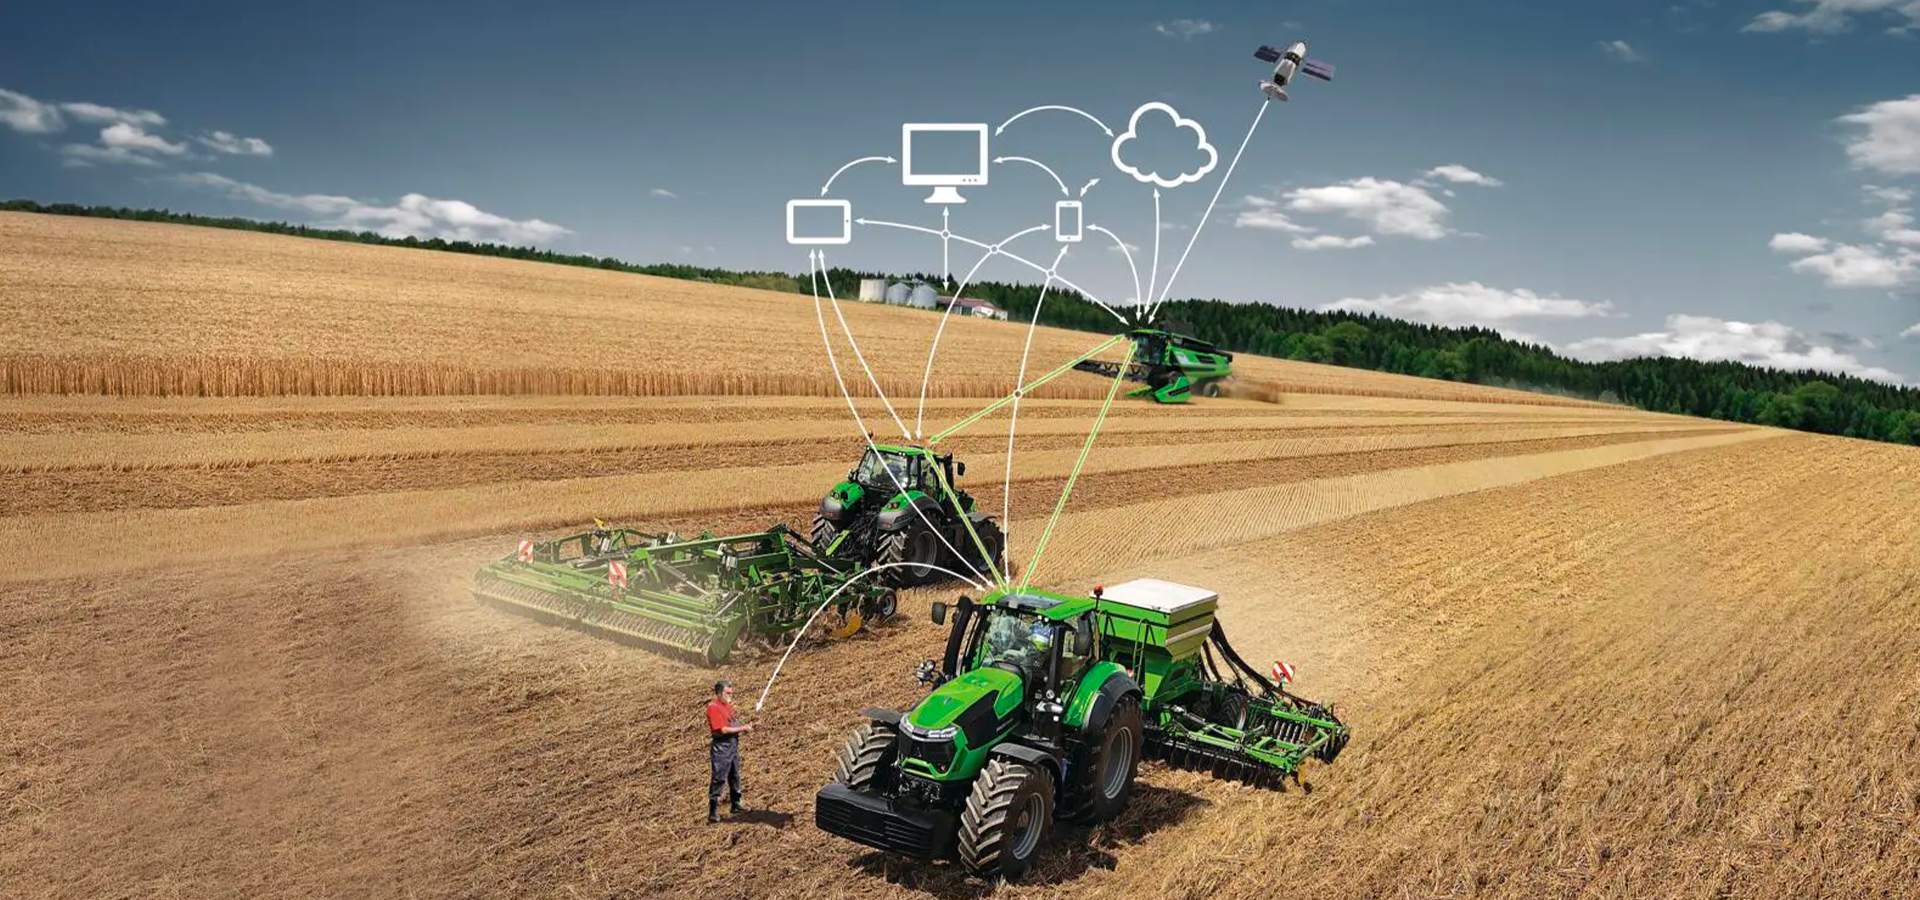 Agricoltura 4.0 e nuove tecnologie